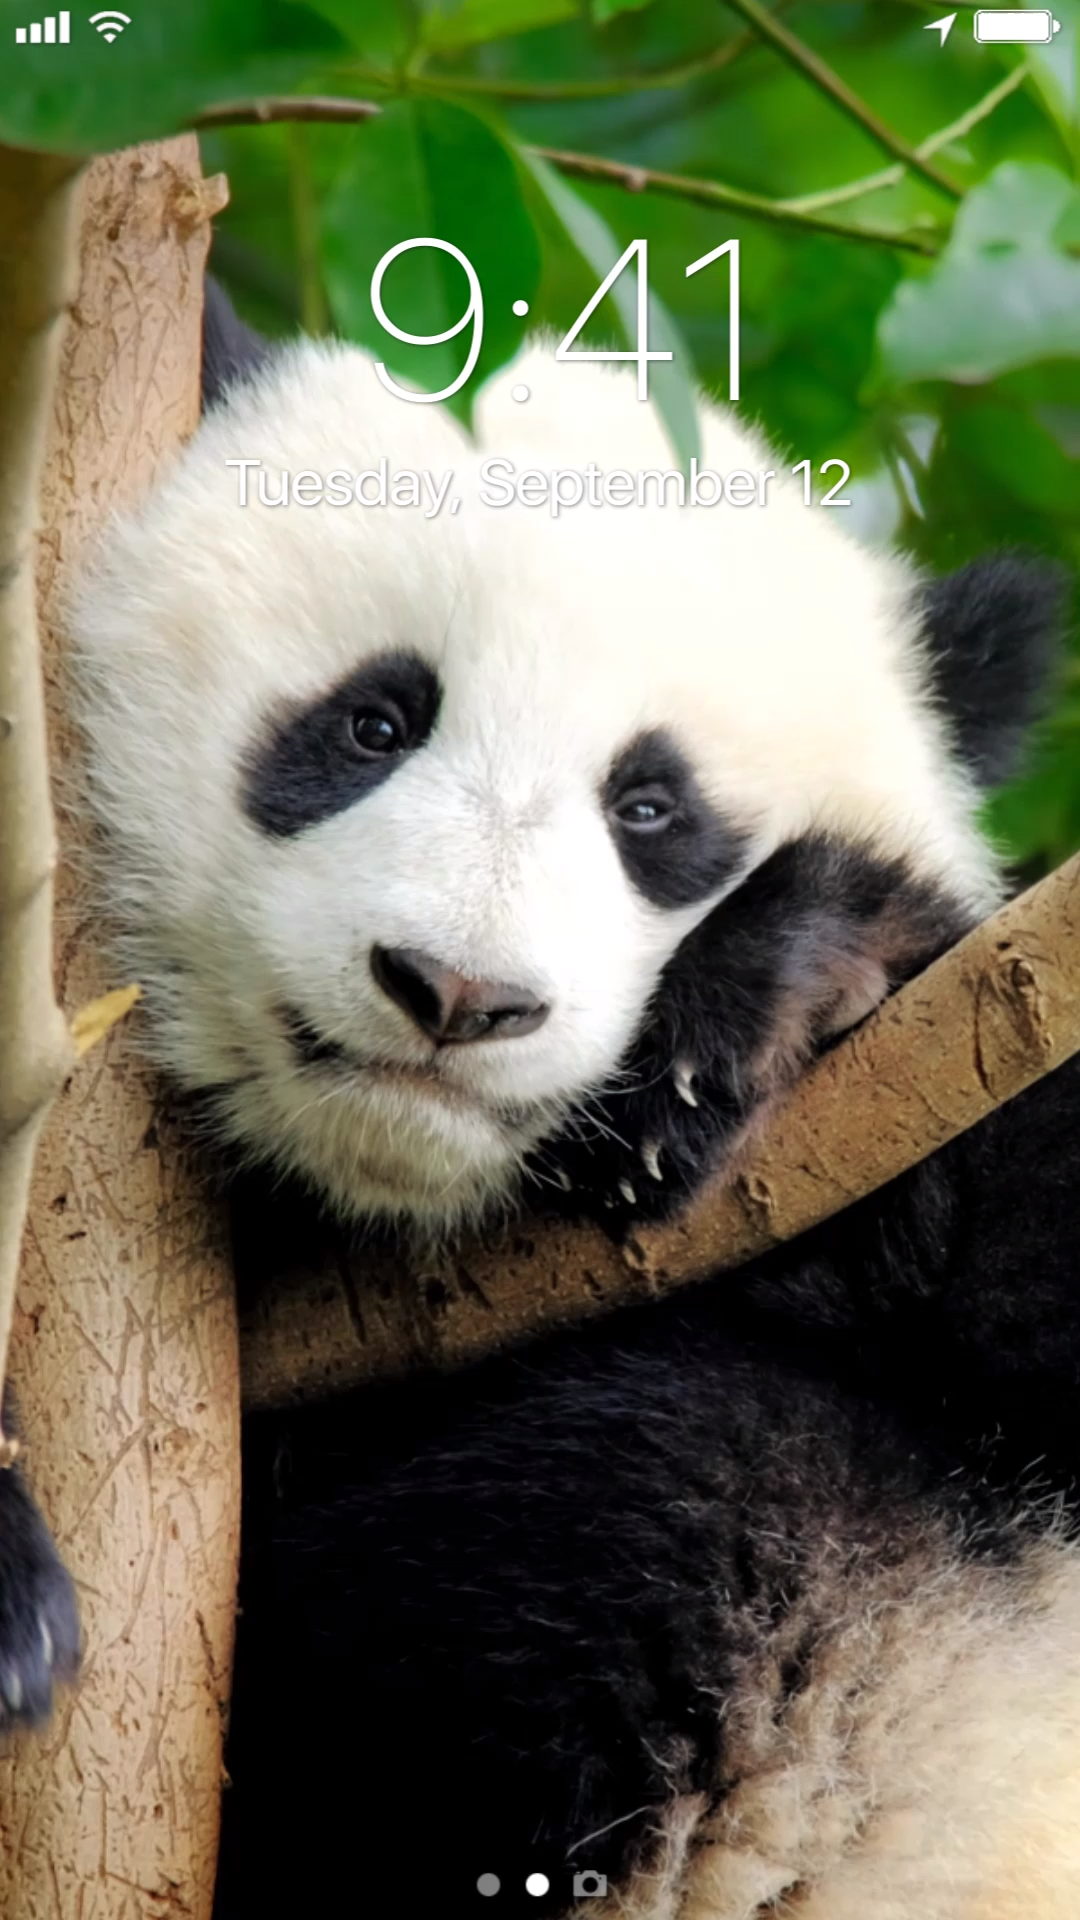 Cubs Panda Bear - HD Wallpaper 